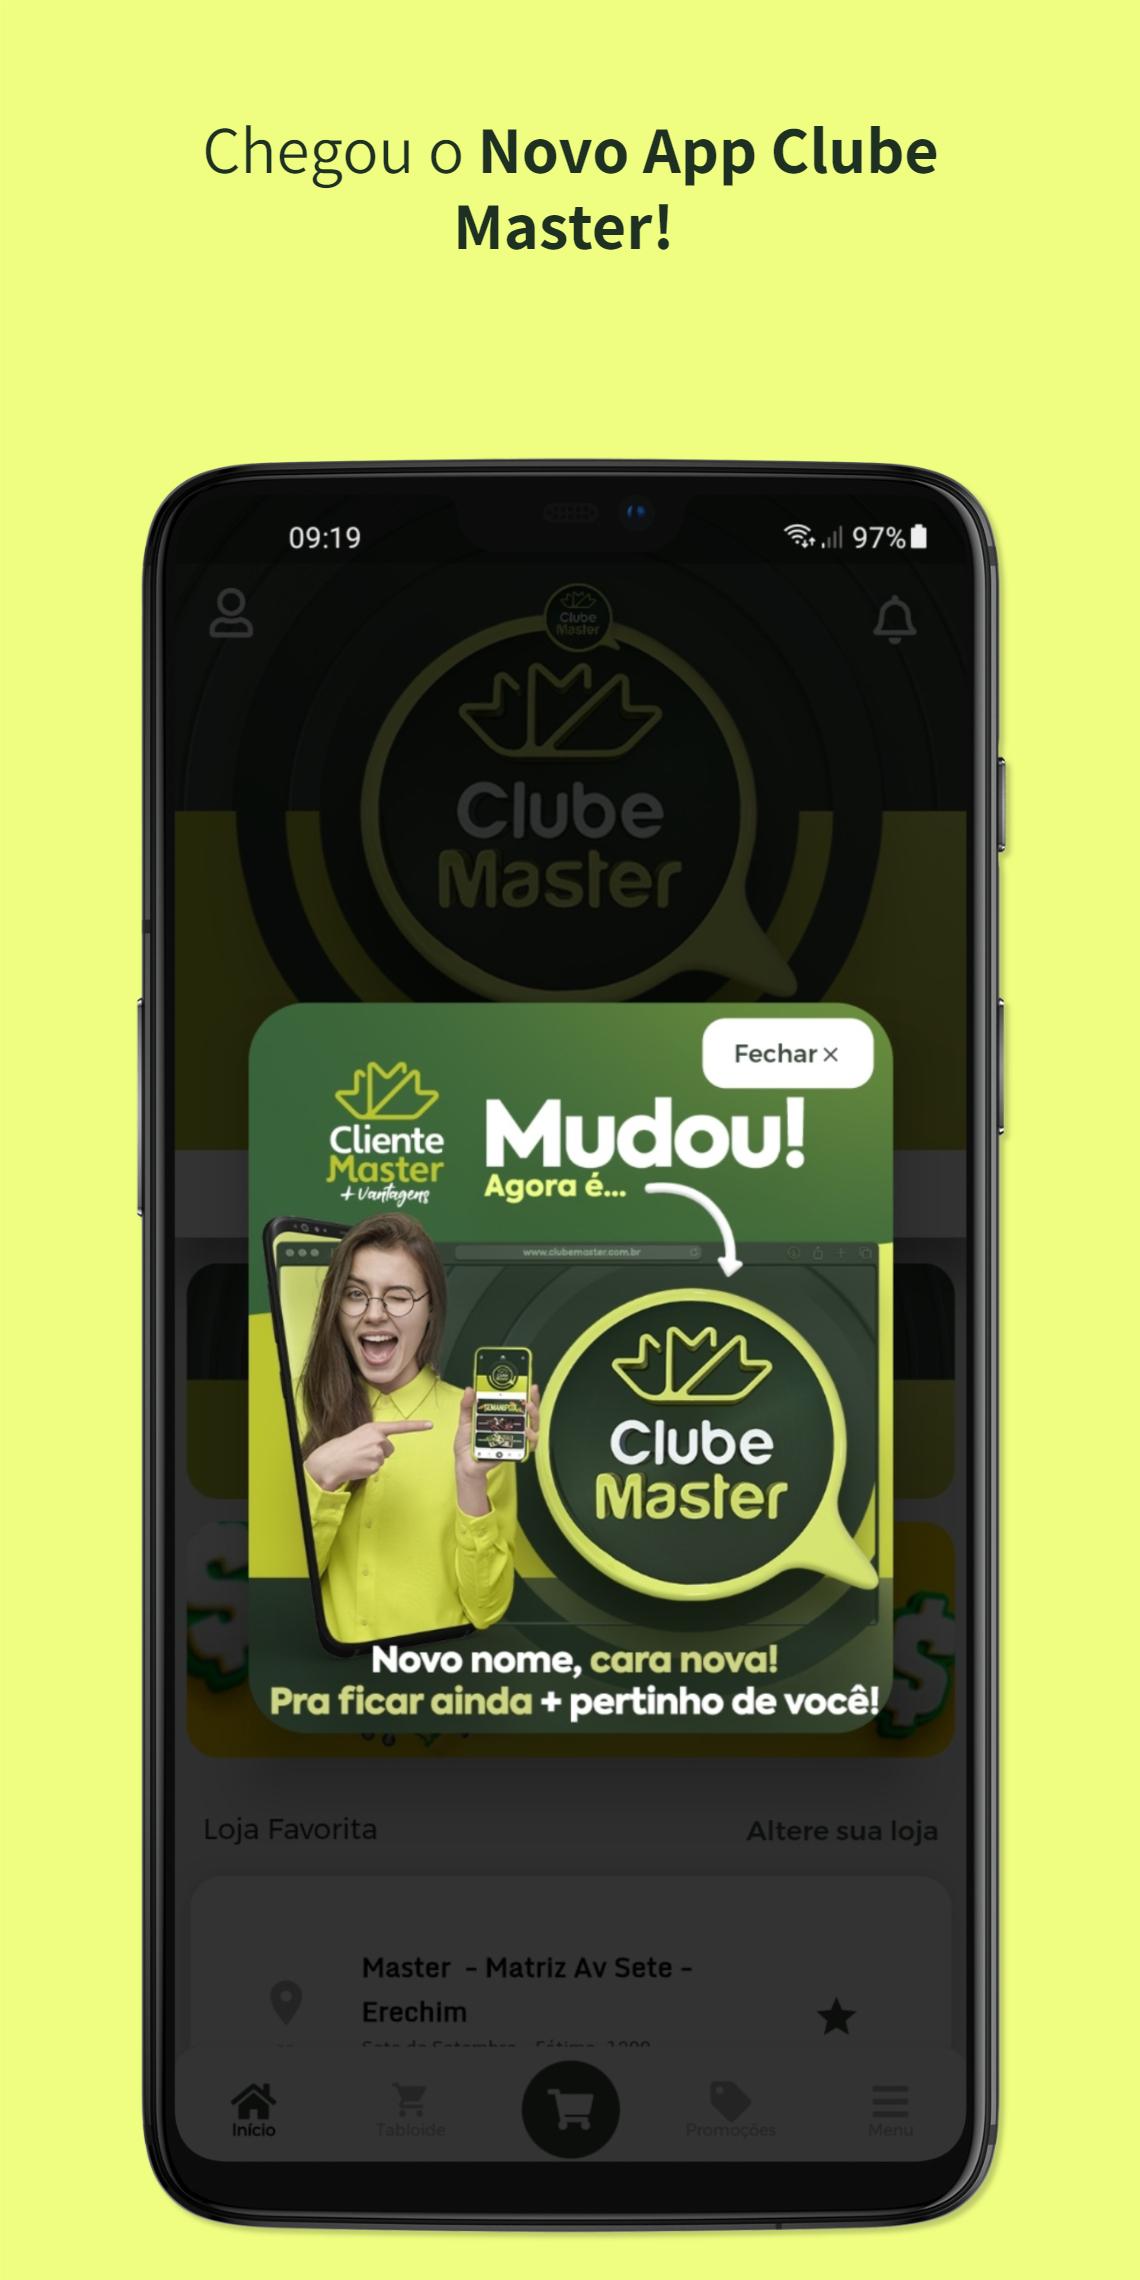 Clube GBMix APK (Android App) - Baixar Grátis